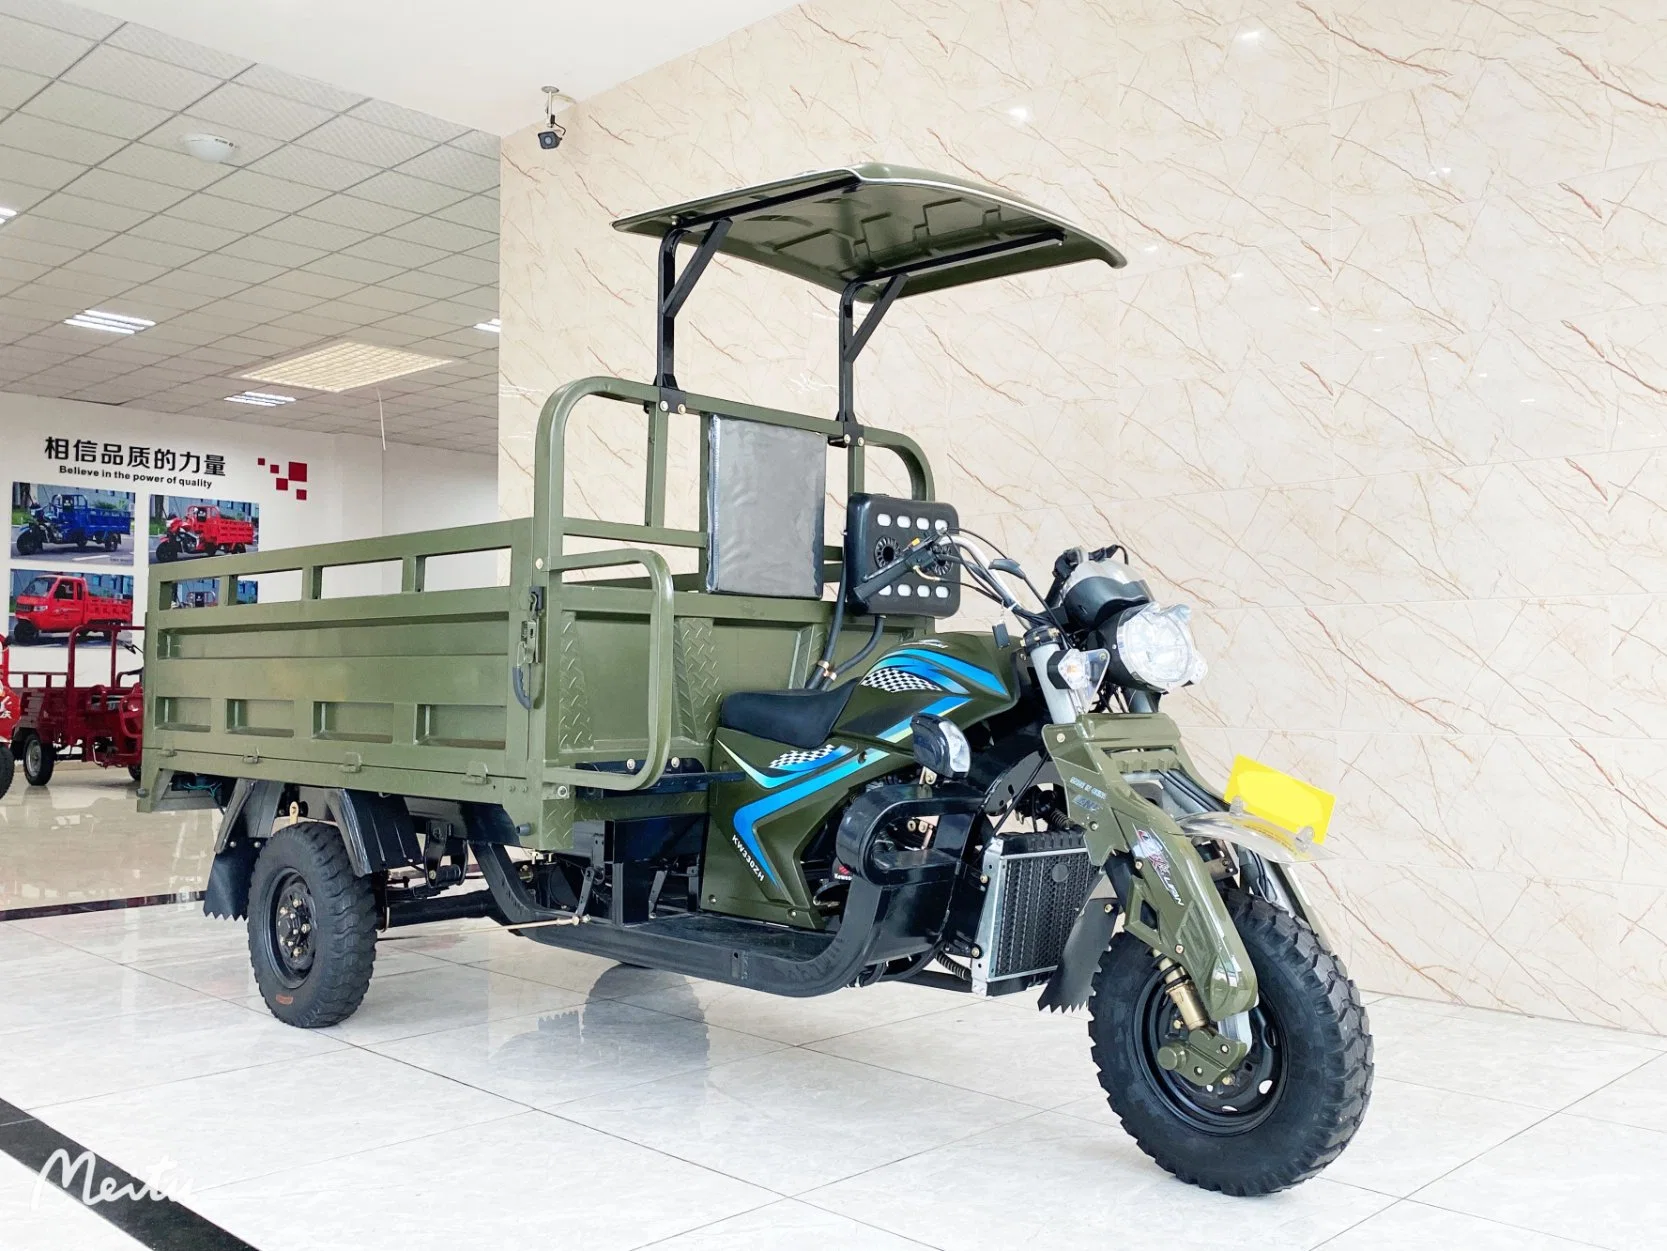 Nuevo Trike Chopper 250cc Tricycle Cargo Cargo Cargadora de pasajeros Rickshaw